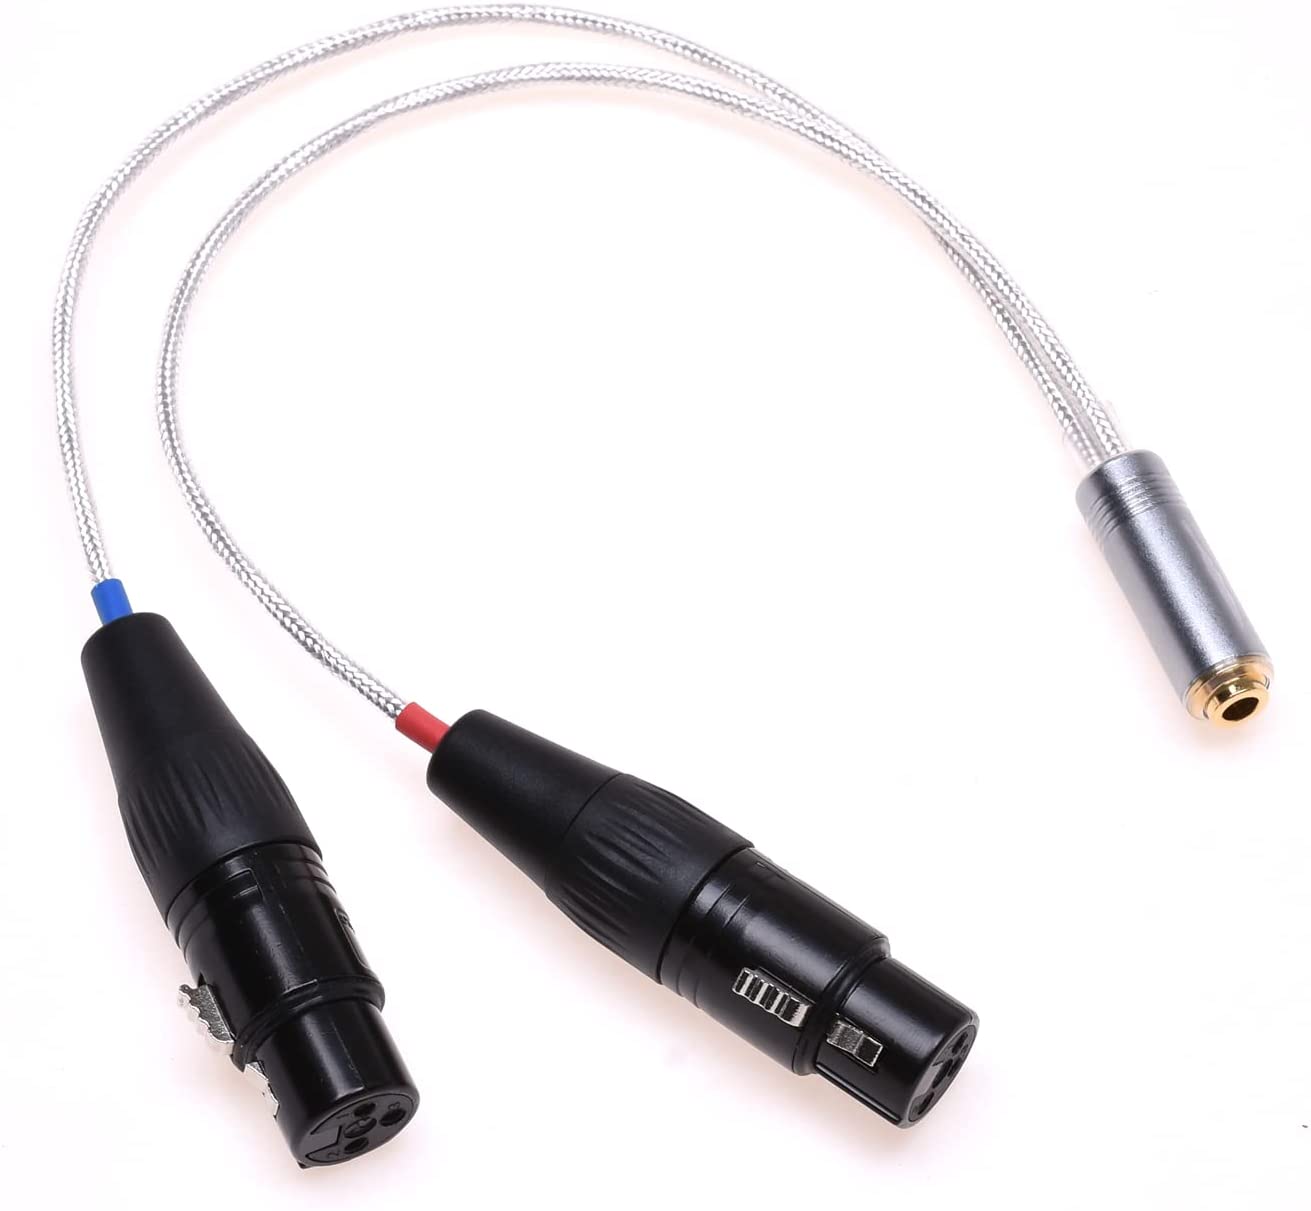 GAGACOCC 4.4mm XLR Cable 2X 3 Pin XLR to 4.4mm Female Balanced Audio Adapter for Sony NW-WM1Z 1A MDR-Z1R TA-ZH1ES PHA-2